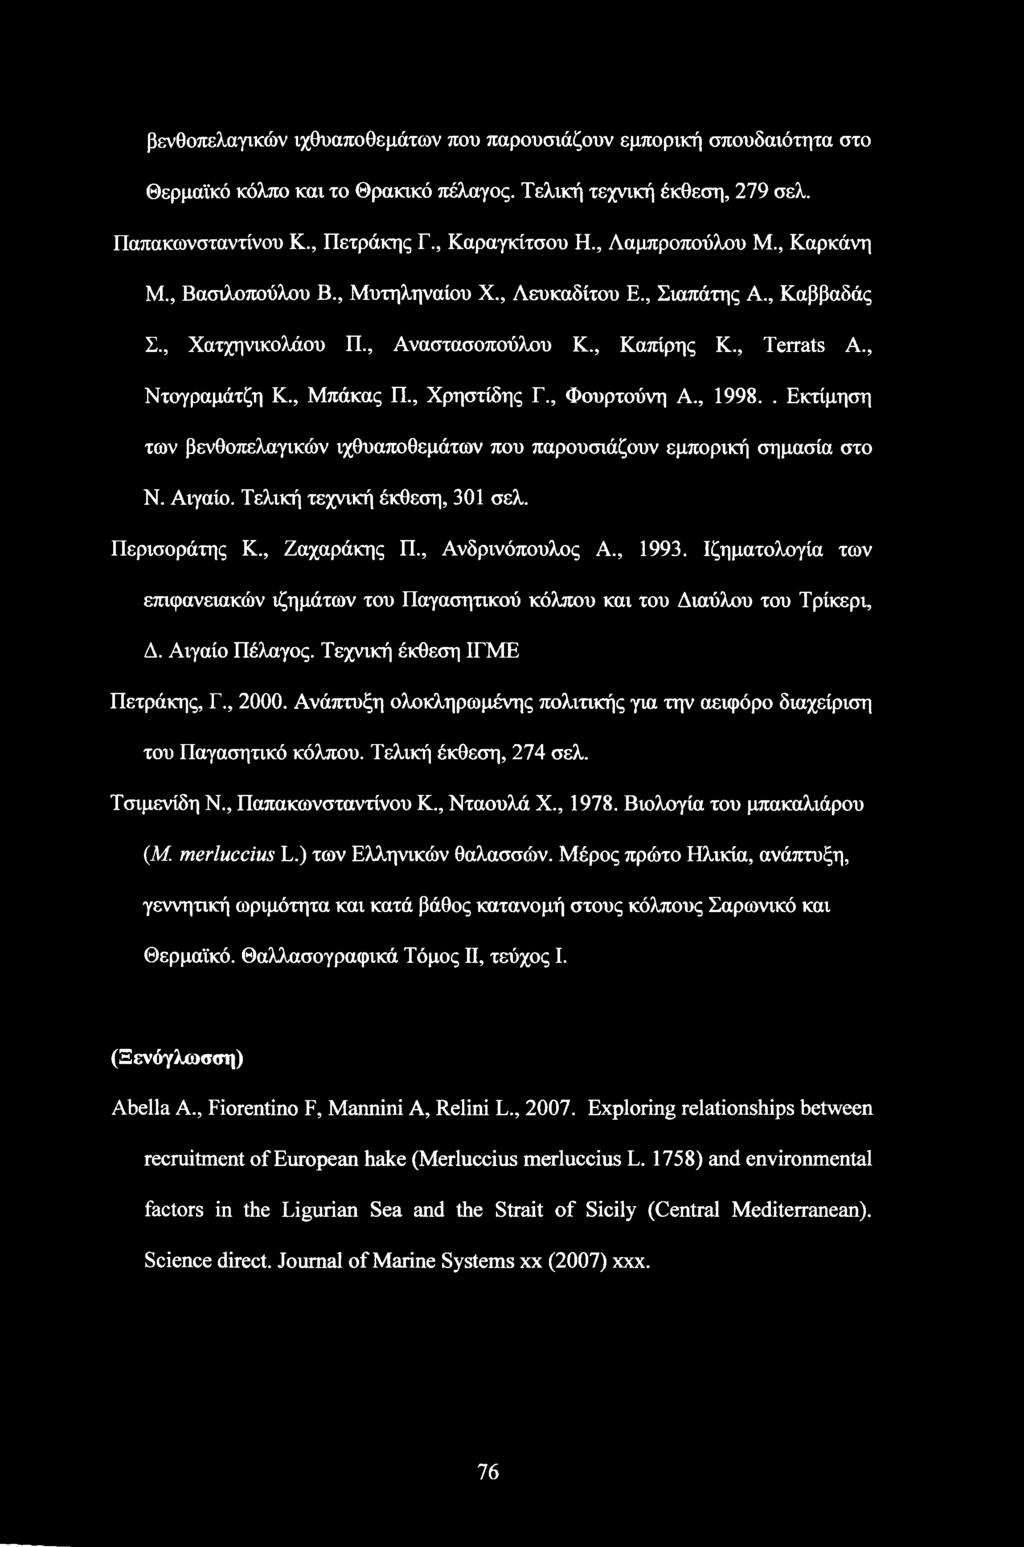 , Χρηστίδης Γ., Φουρτούνη Α., 1998.. Εκτίμηση των βενθοπελαγικών ιχθυαποθεμάτων που παρουσιάζουν εμπορική σημασία στο Ν. Αιγαίο. Τελική τεχνική έκθεση, 301 σελ. Περισοράτης Κ., Ζαχαράκης Π.